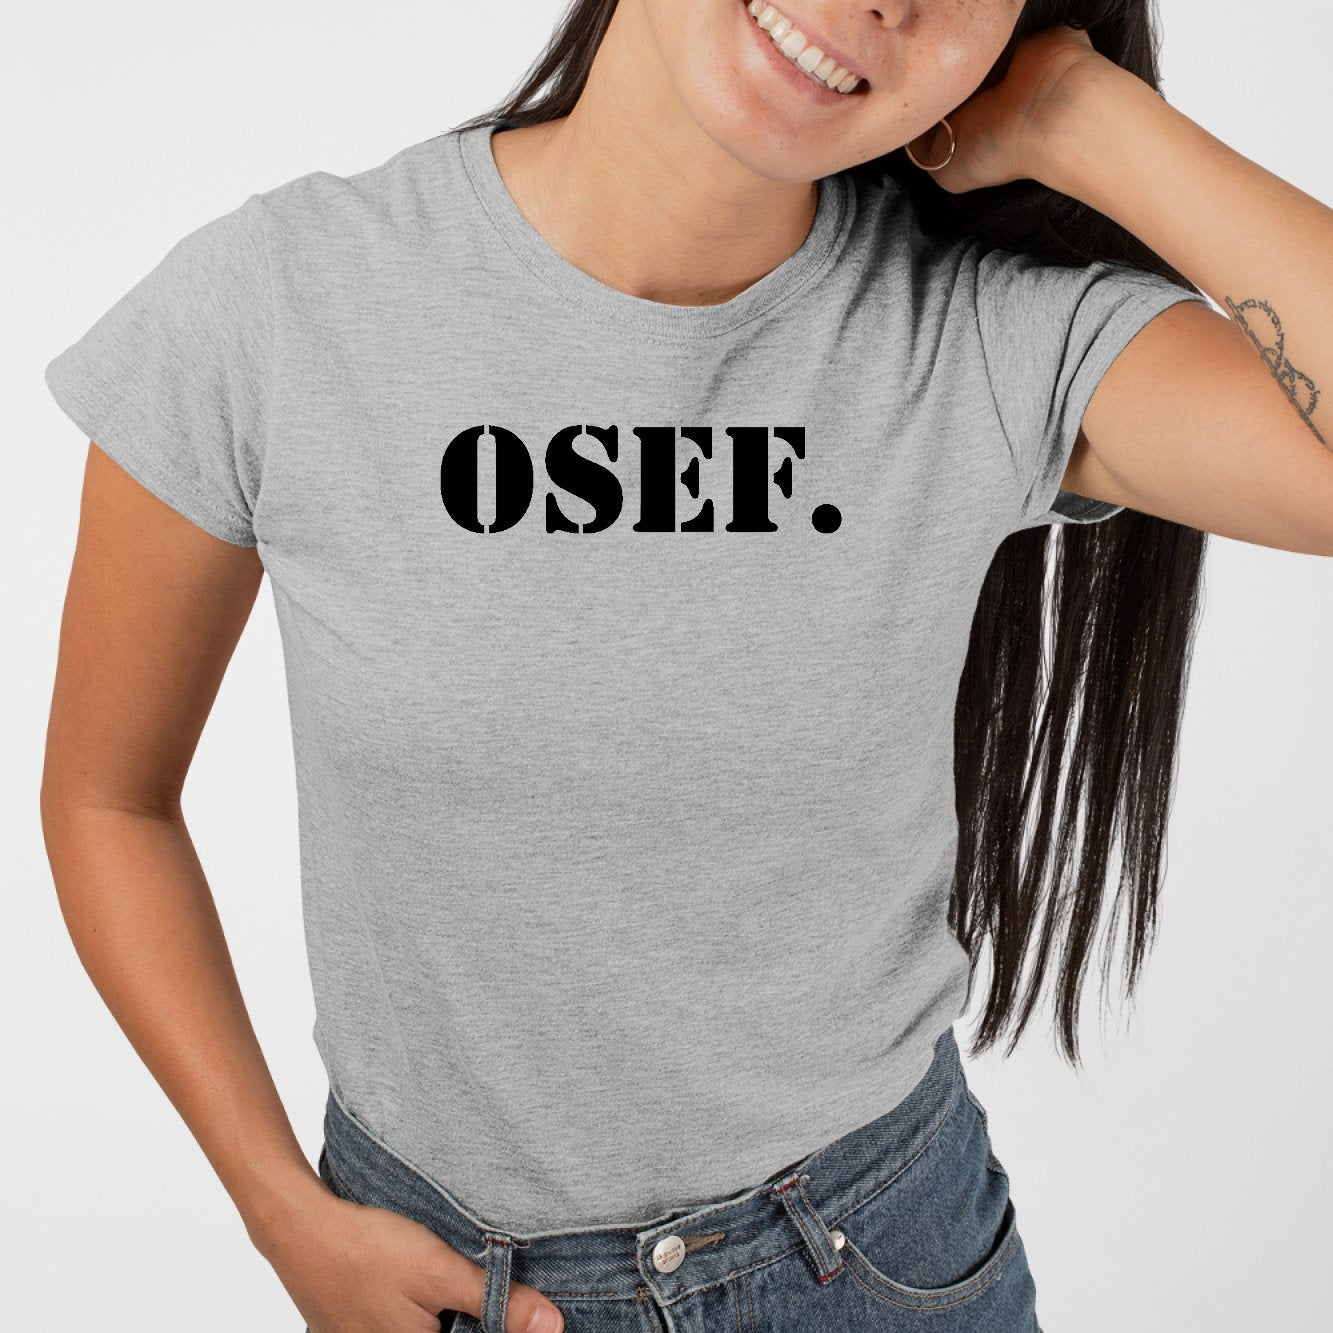 T-Shirt Femme OSEF On s'en fout Gris